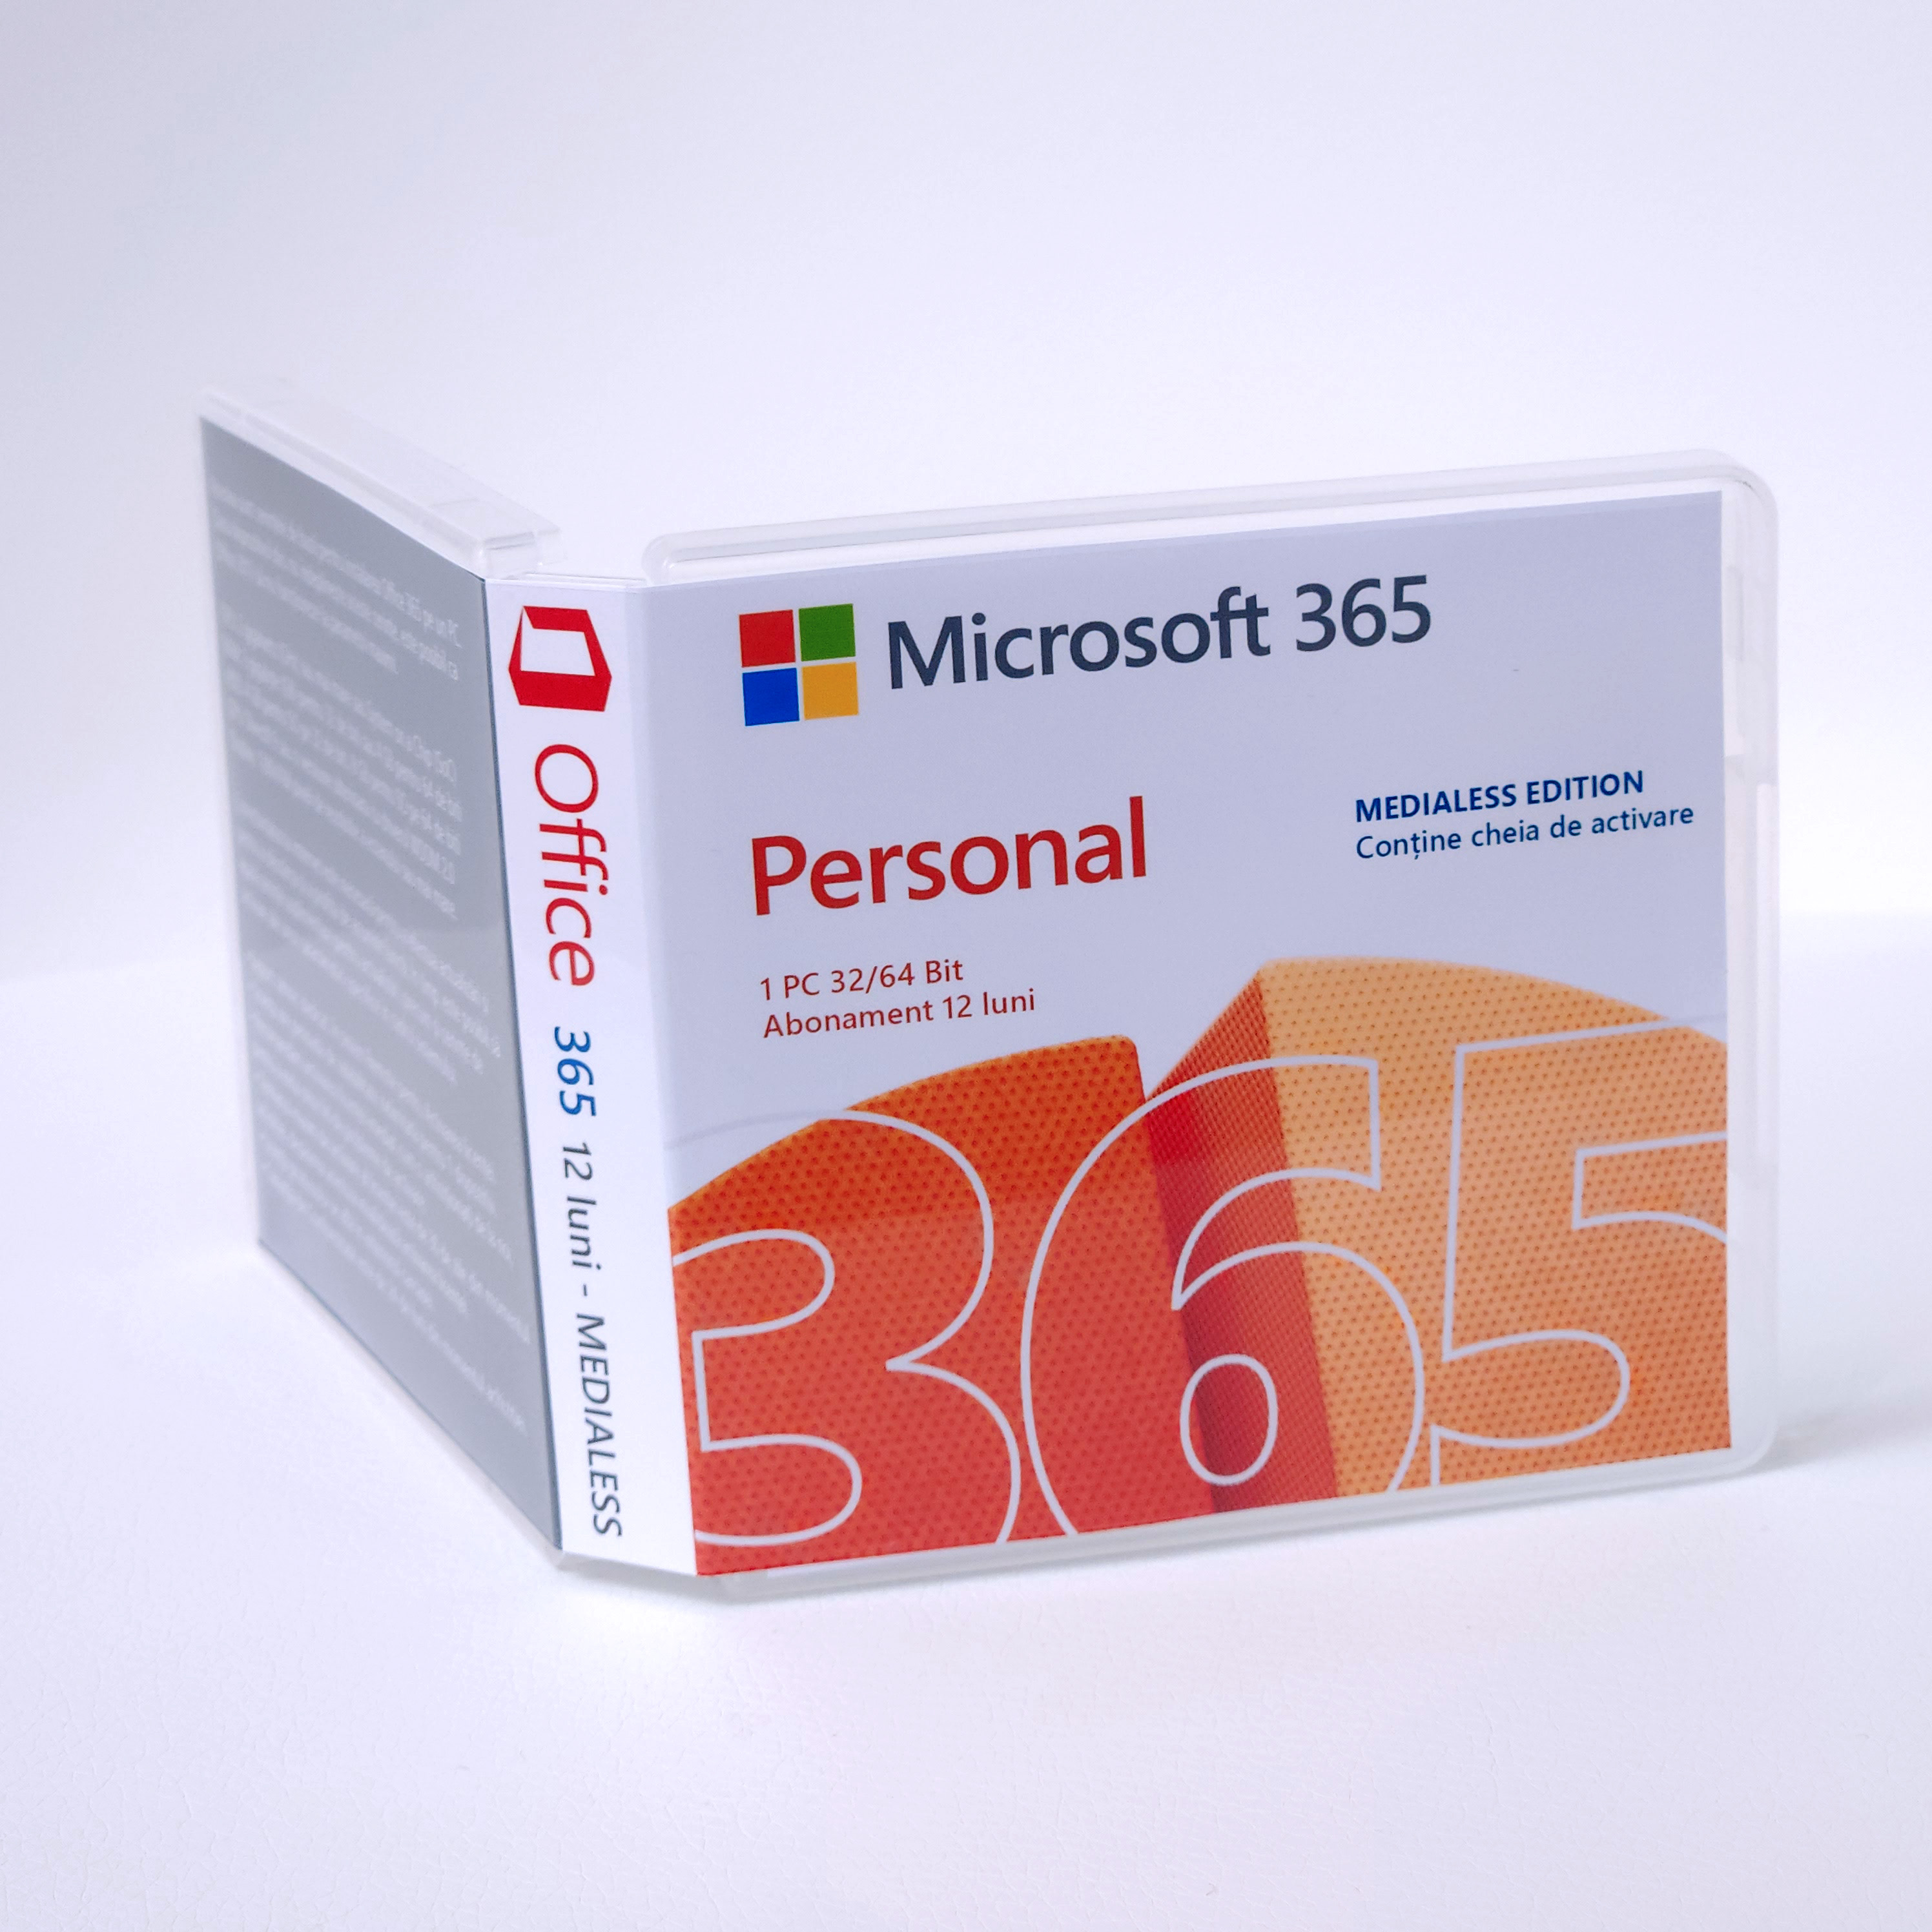 Cumpără acum Licenta Microsoft 365 Personal 1 an 1 utilizator 1 PC/MAC - Medialess Edition de pe Sellect.ro